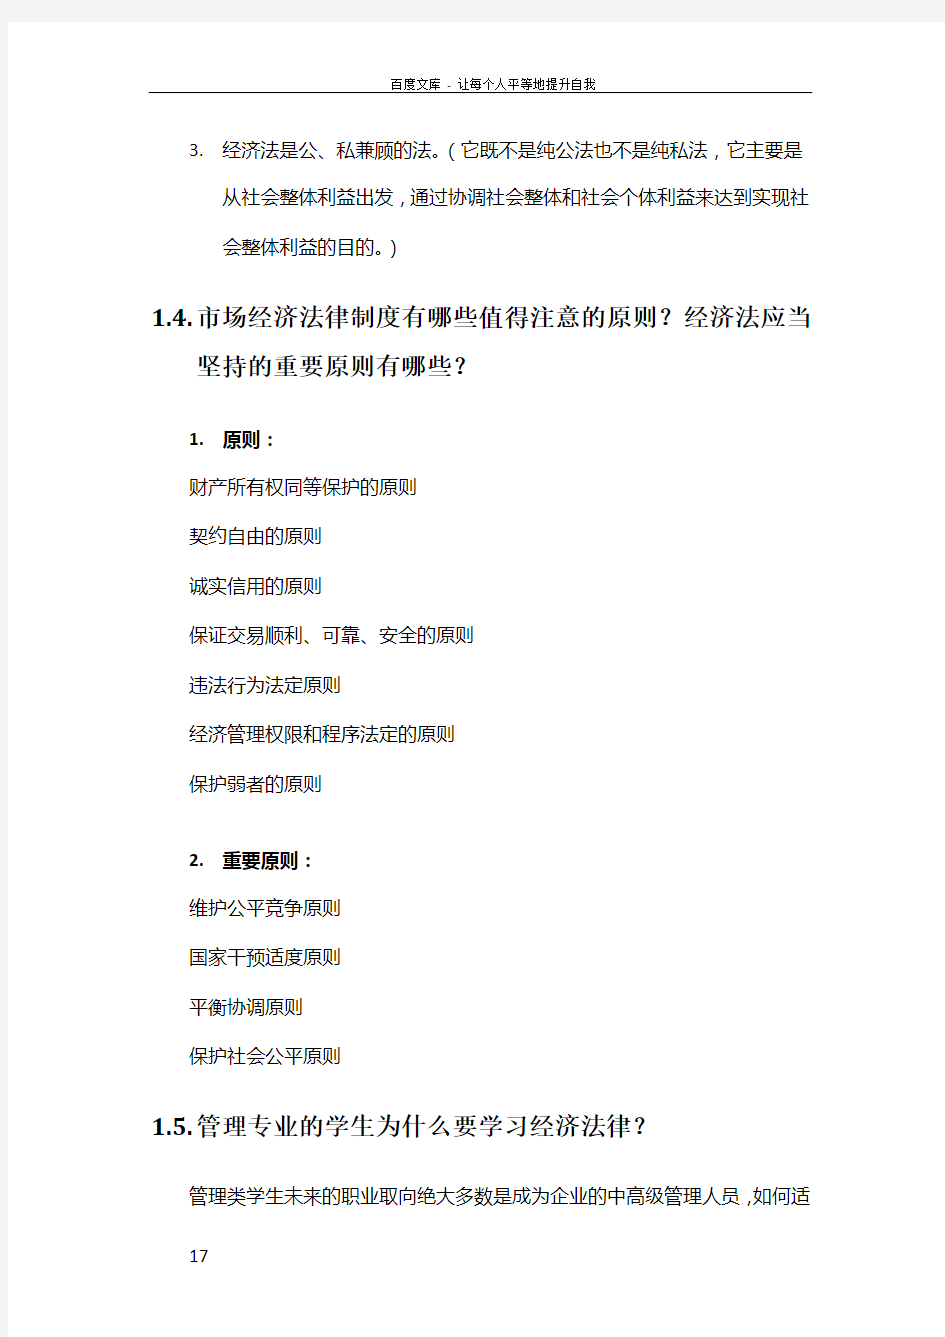 北京邮电大学经济管理学院经济法期末考试复习纲要